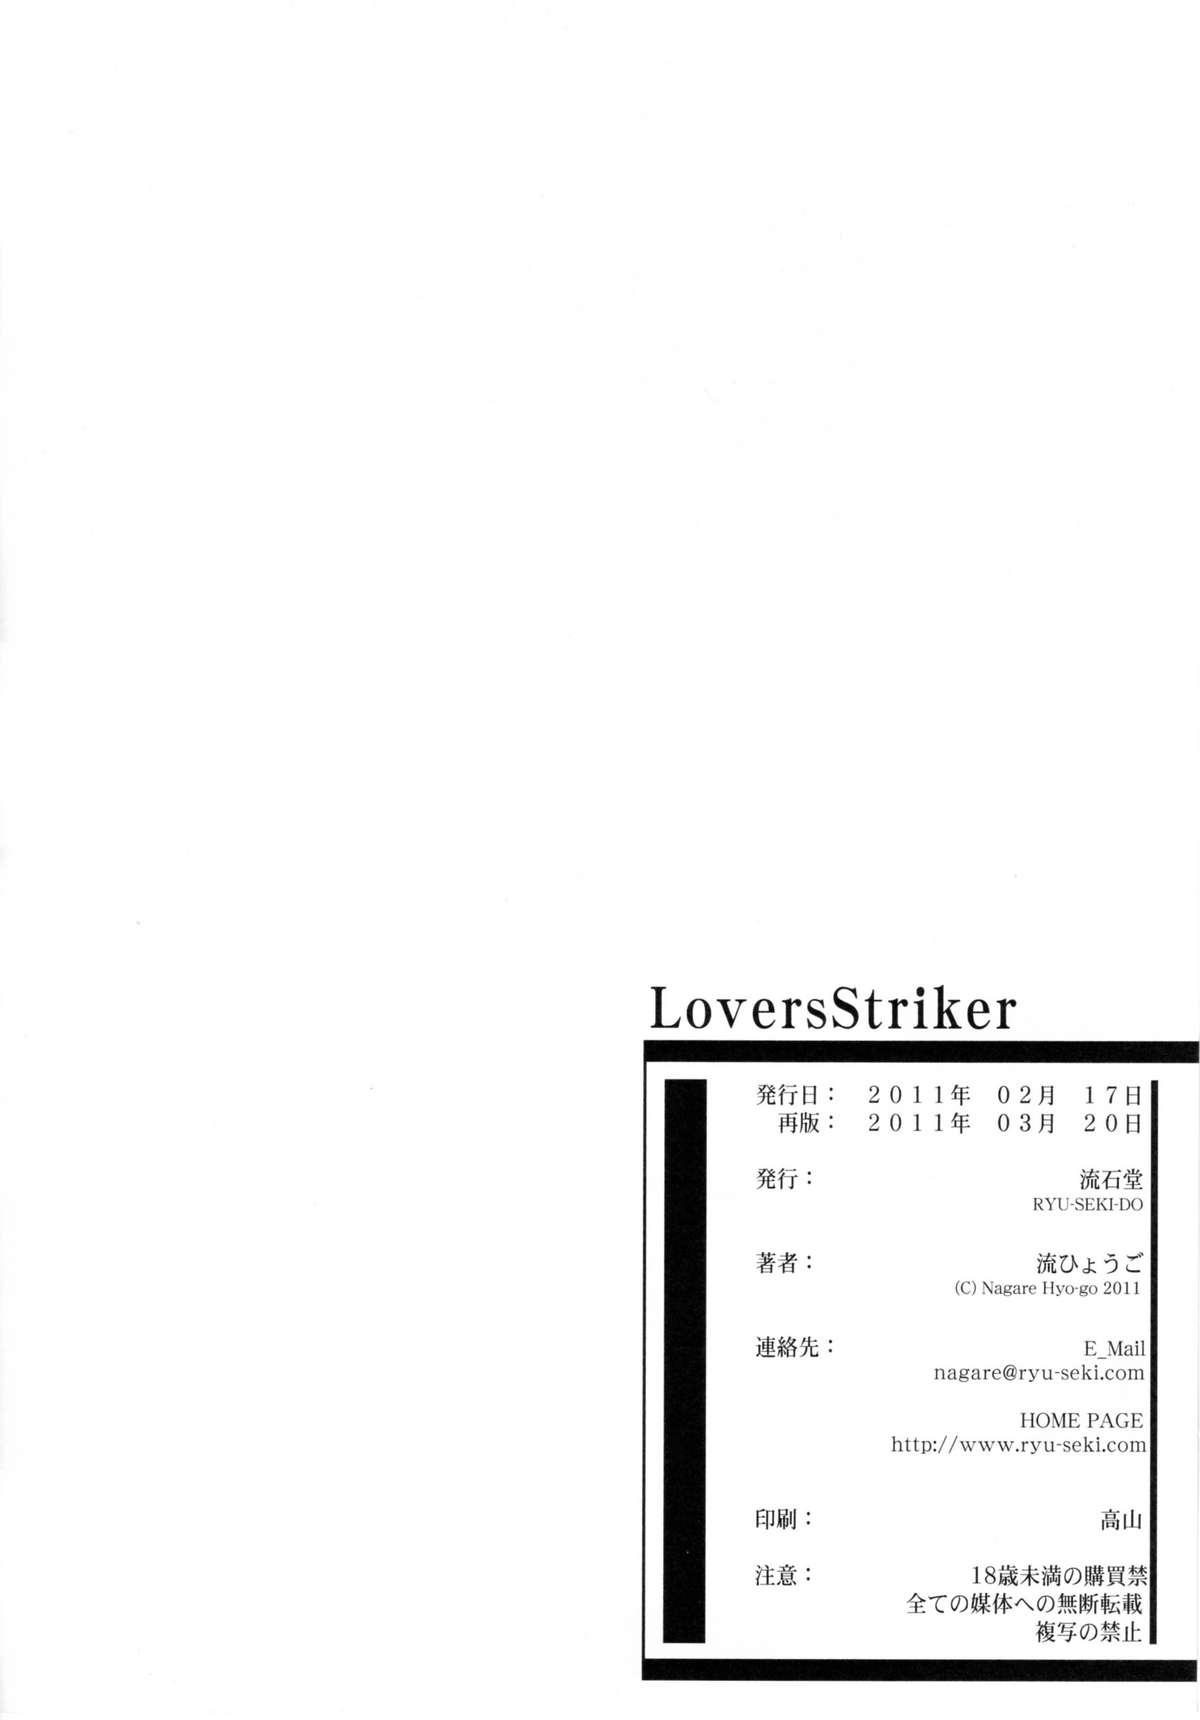 Aussie LS Lovers Striker - Infinite stratos Art - Page 33